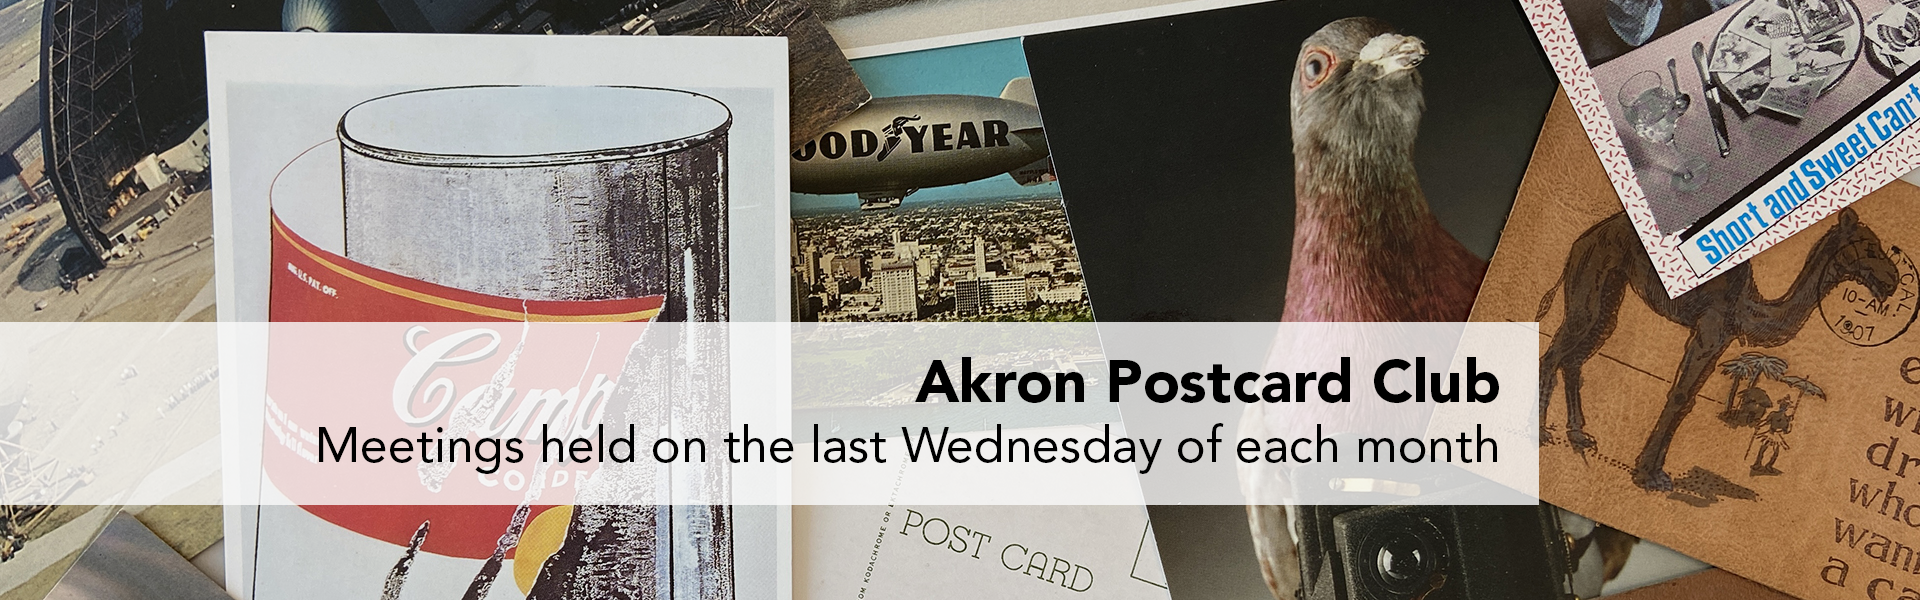 Akron Postcard Club